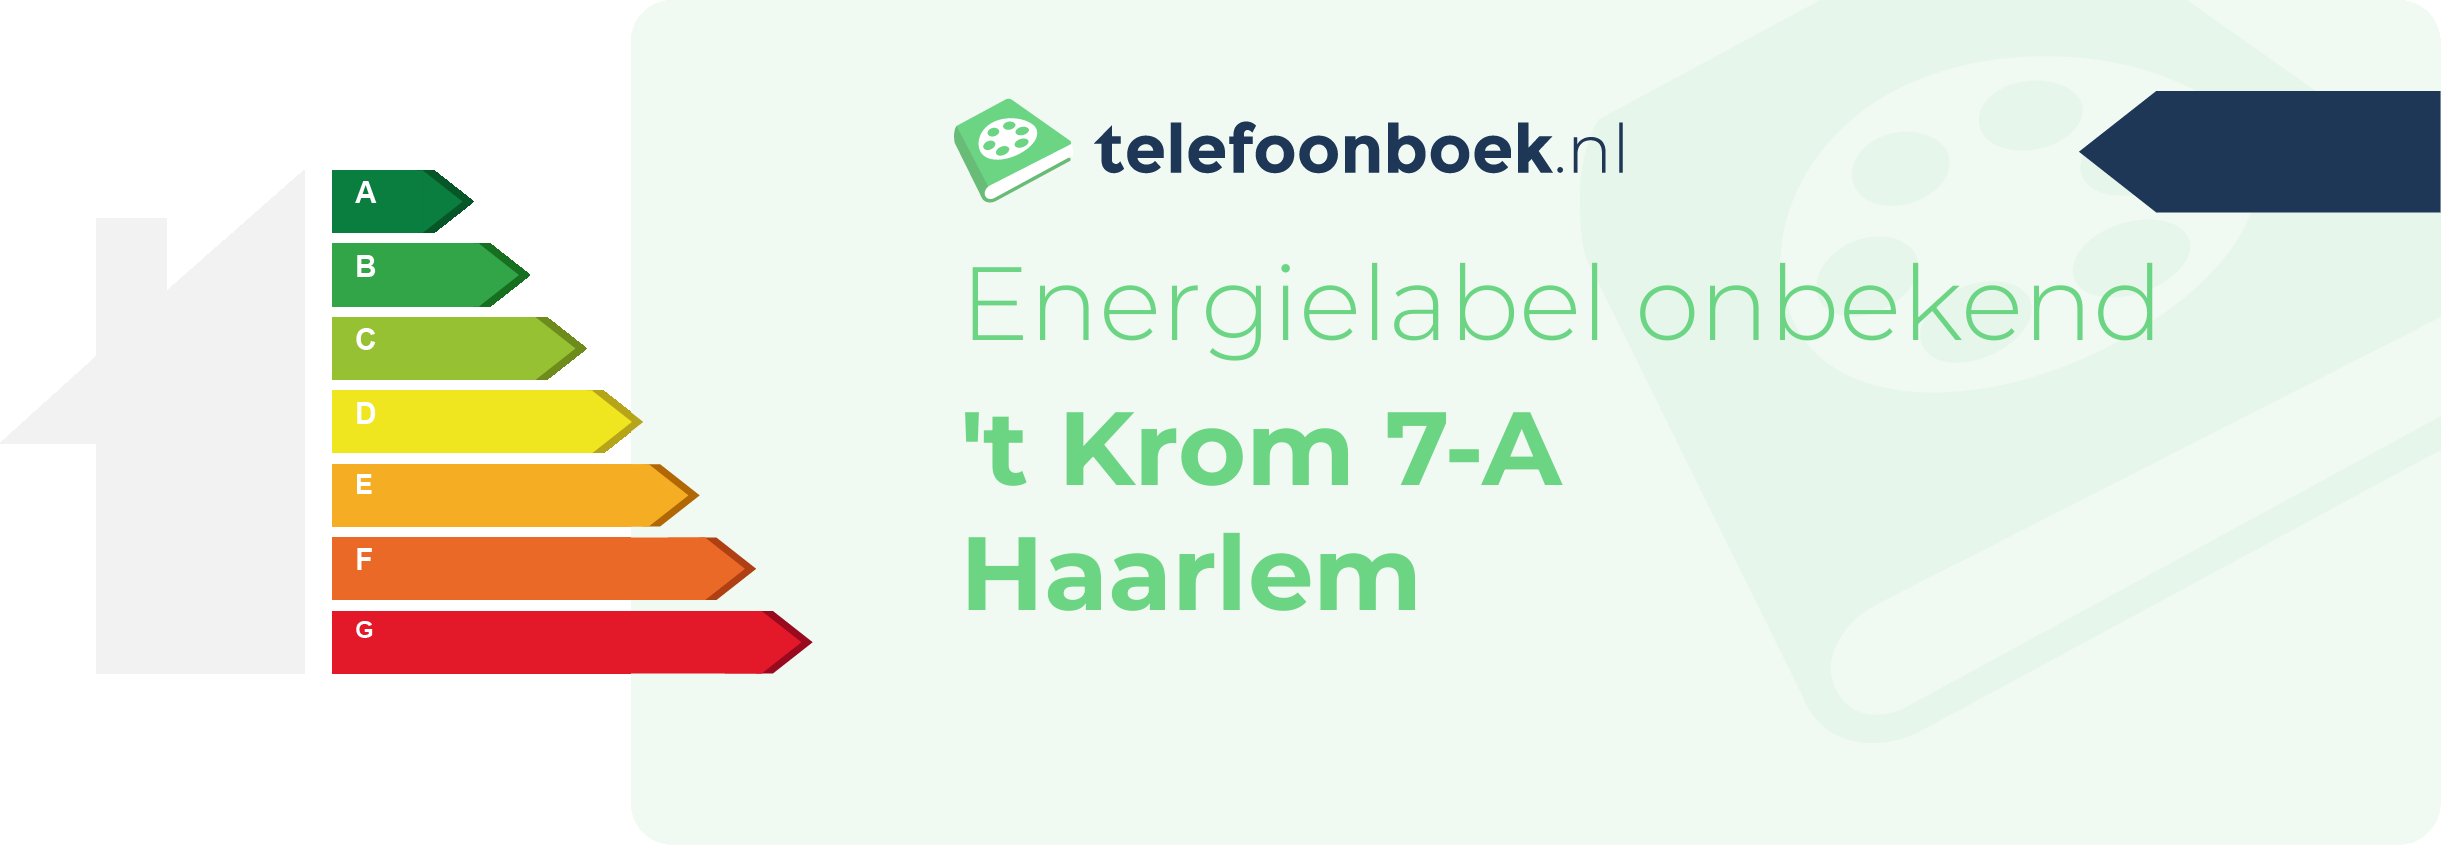 Energielabel 't Krom 7-A Haarlem